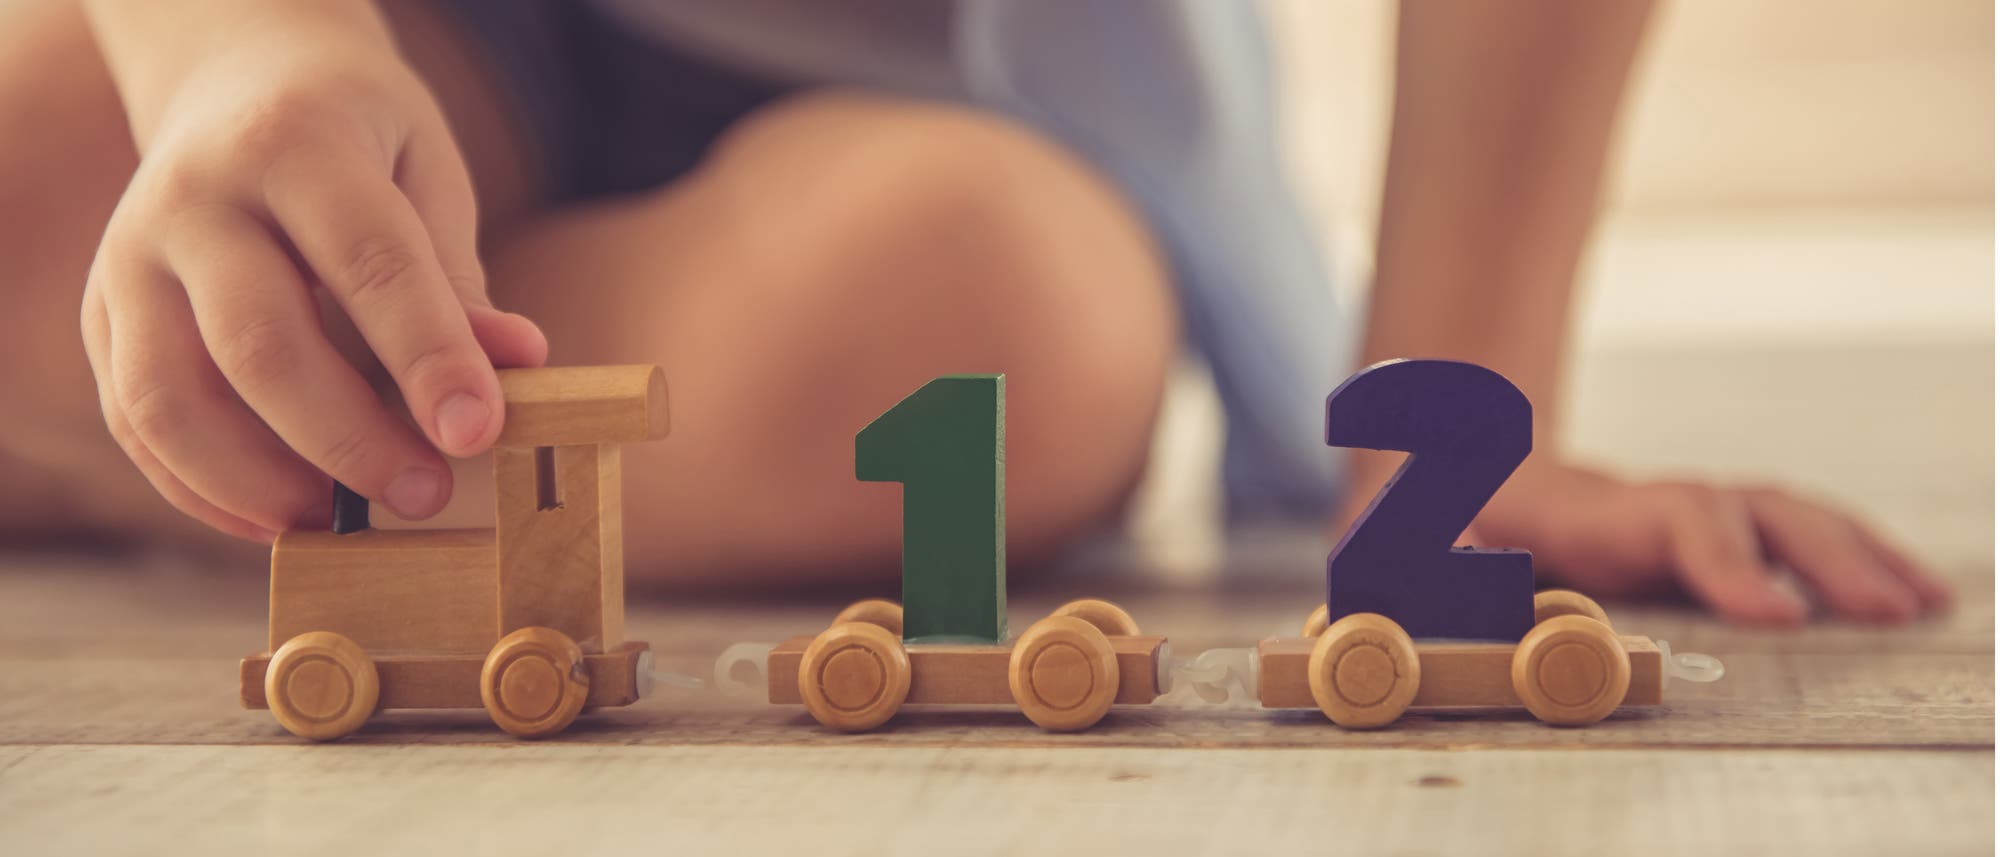 Kind spielt mit einem Zug, auf dem die Zahlen 1 und 2 stehen